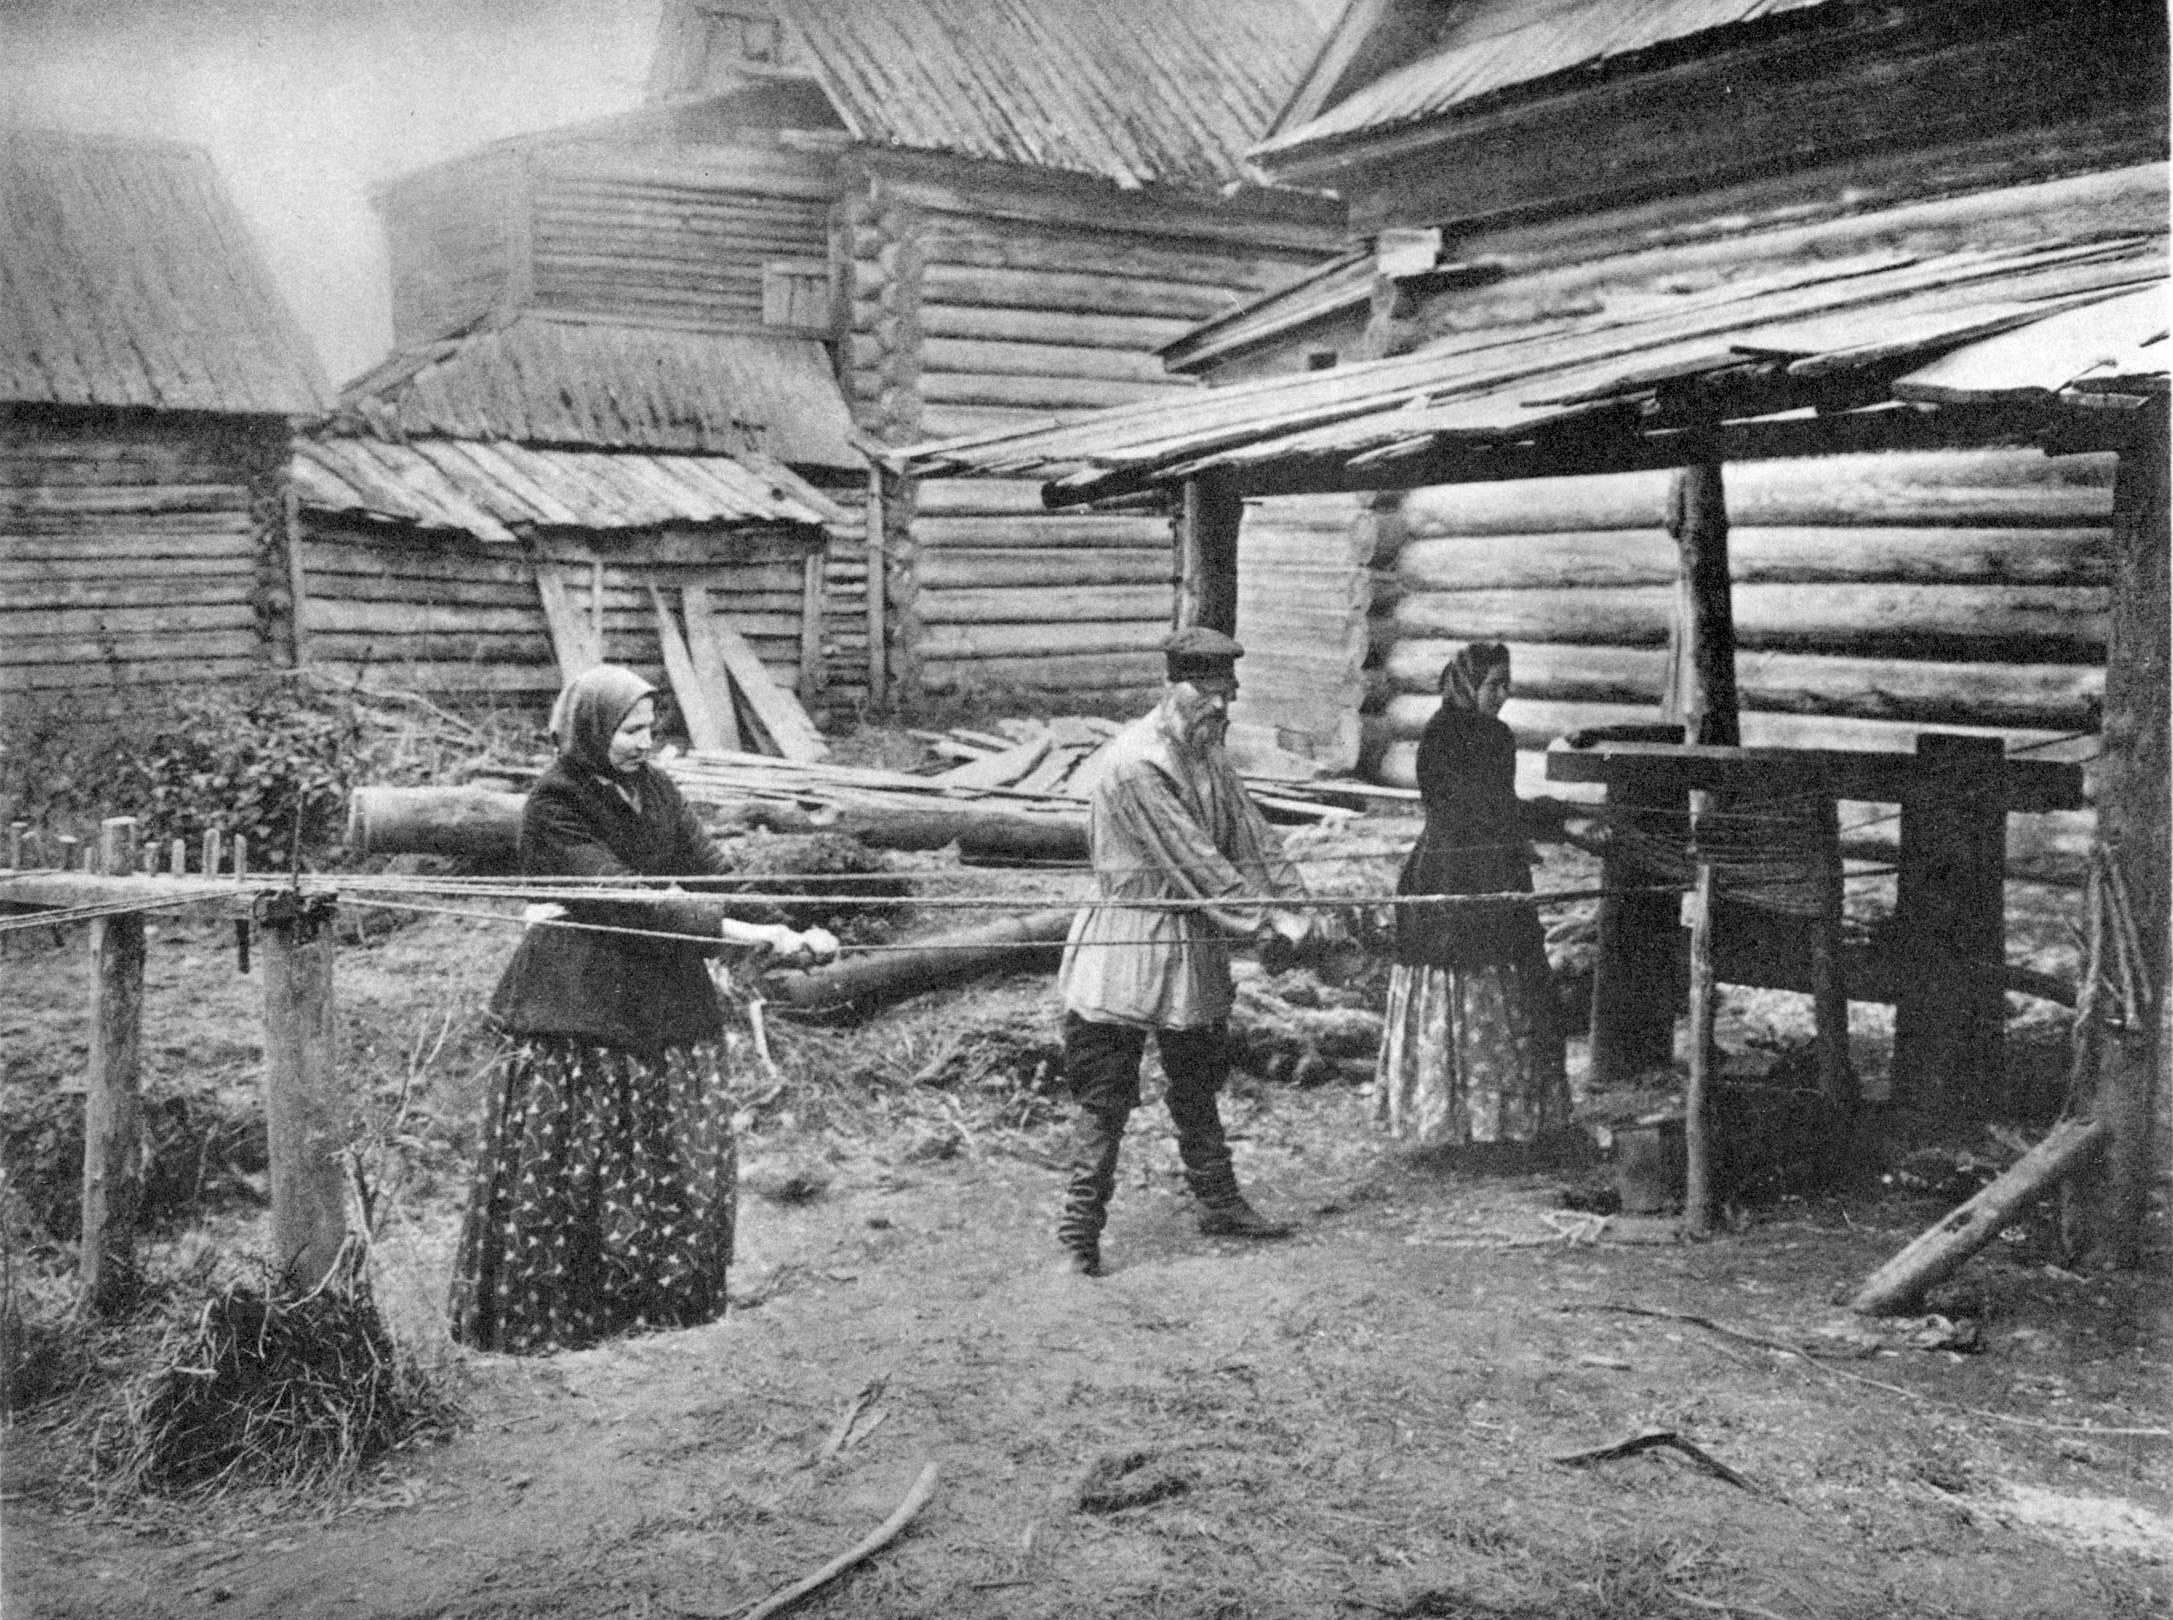 фотографии деревни 19 века